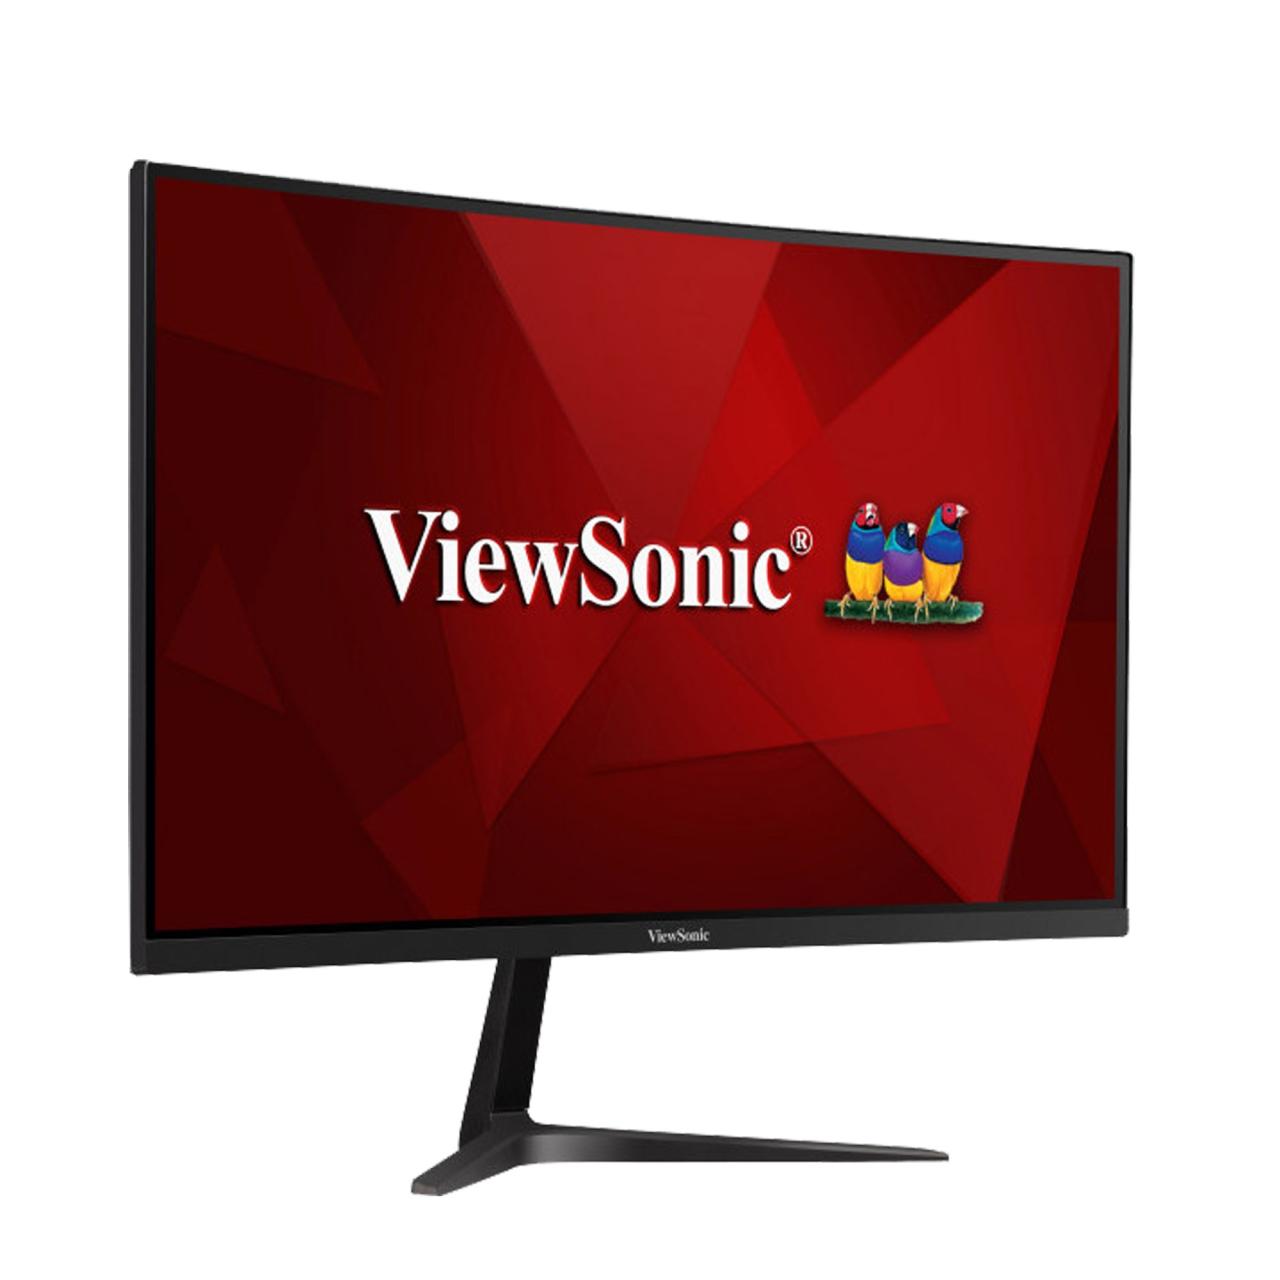 ViewSonic VX2718 – Màn hình cong 1500R, 165Hz cho trải nghiệm game tốt - ảnh 1